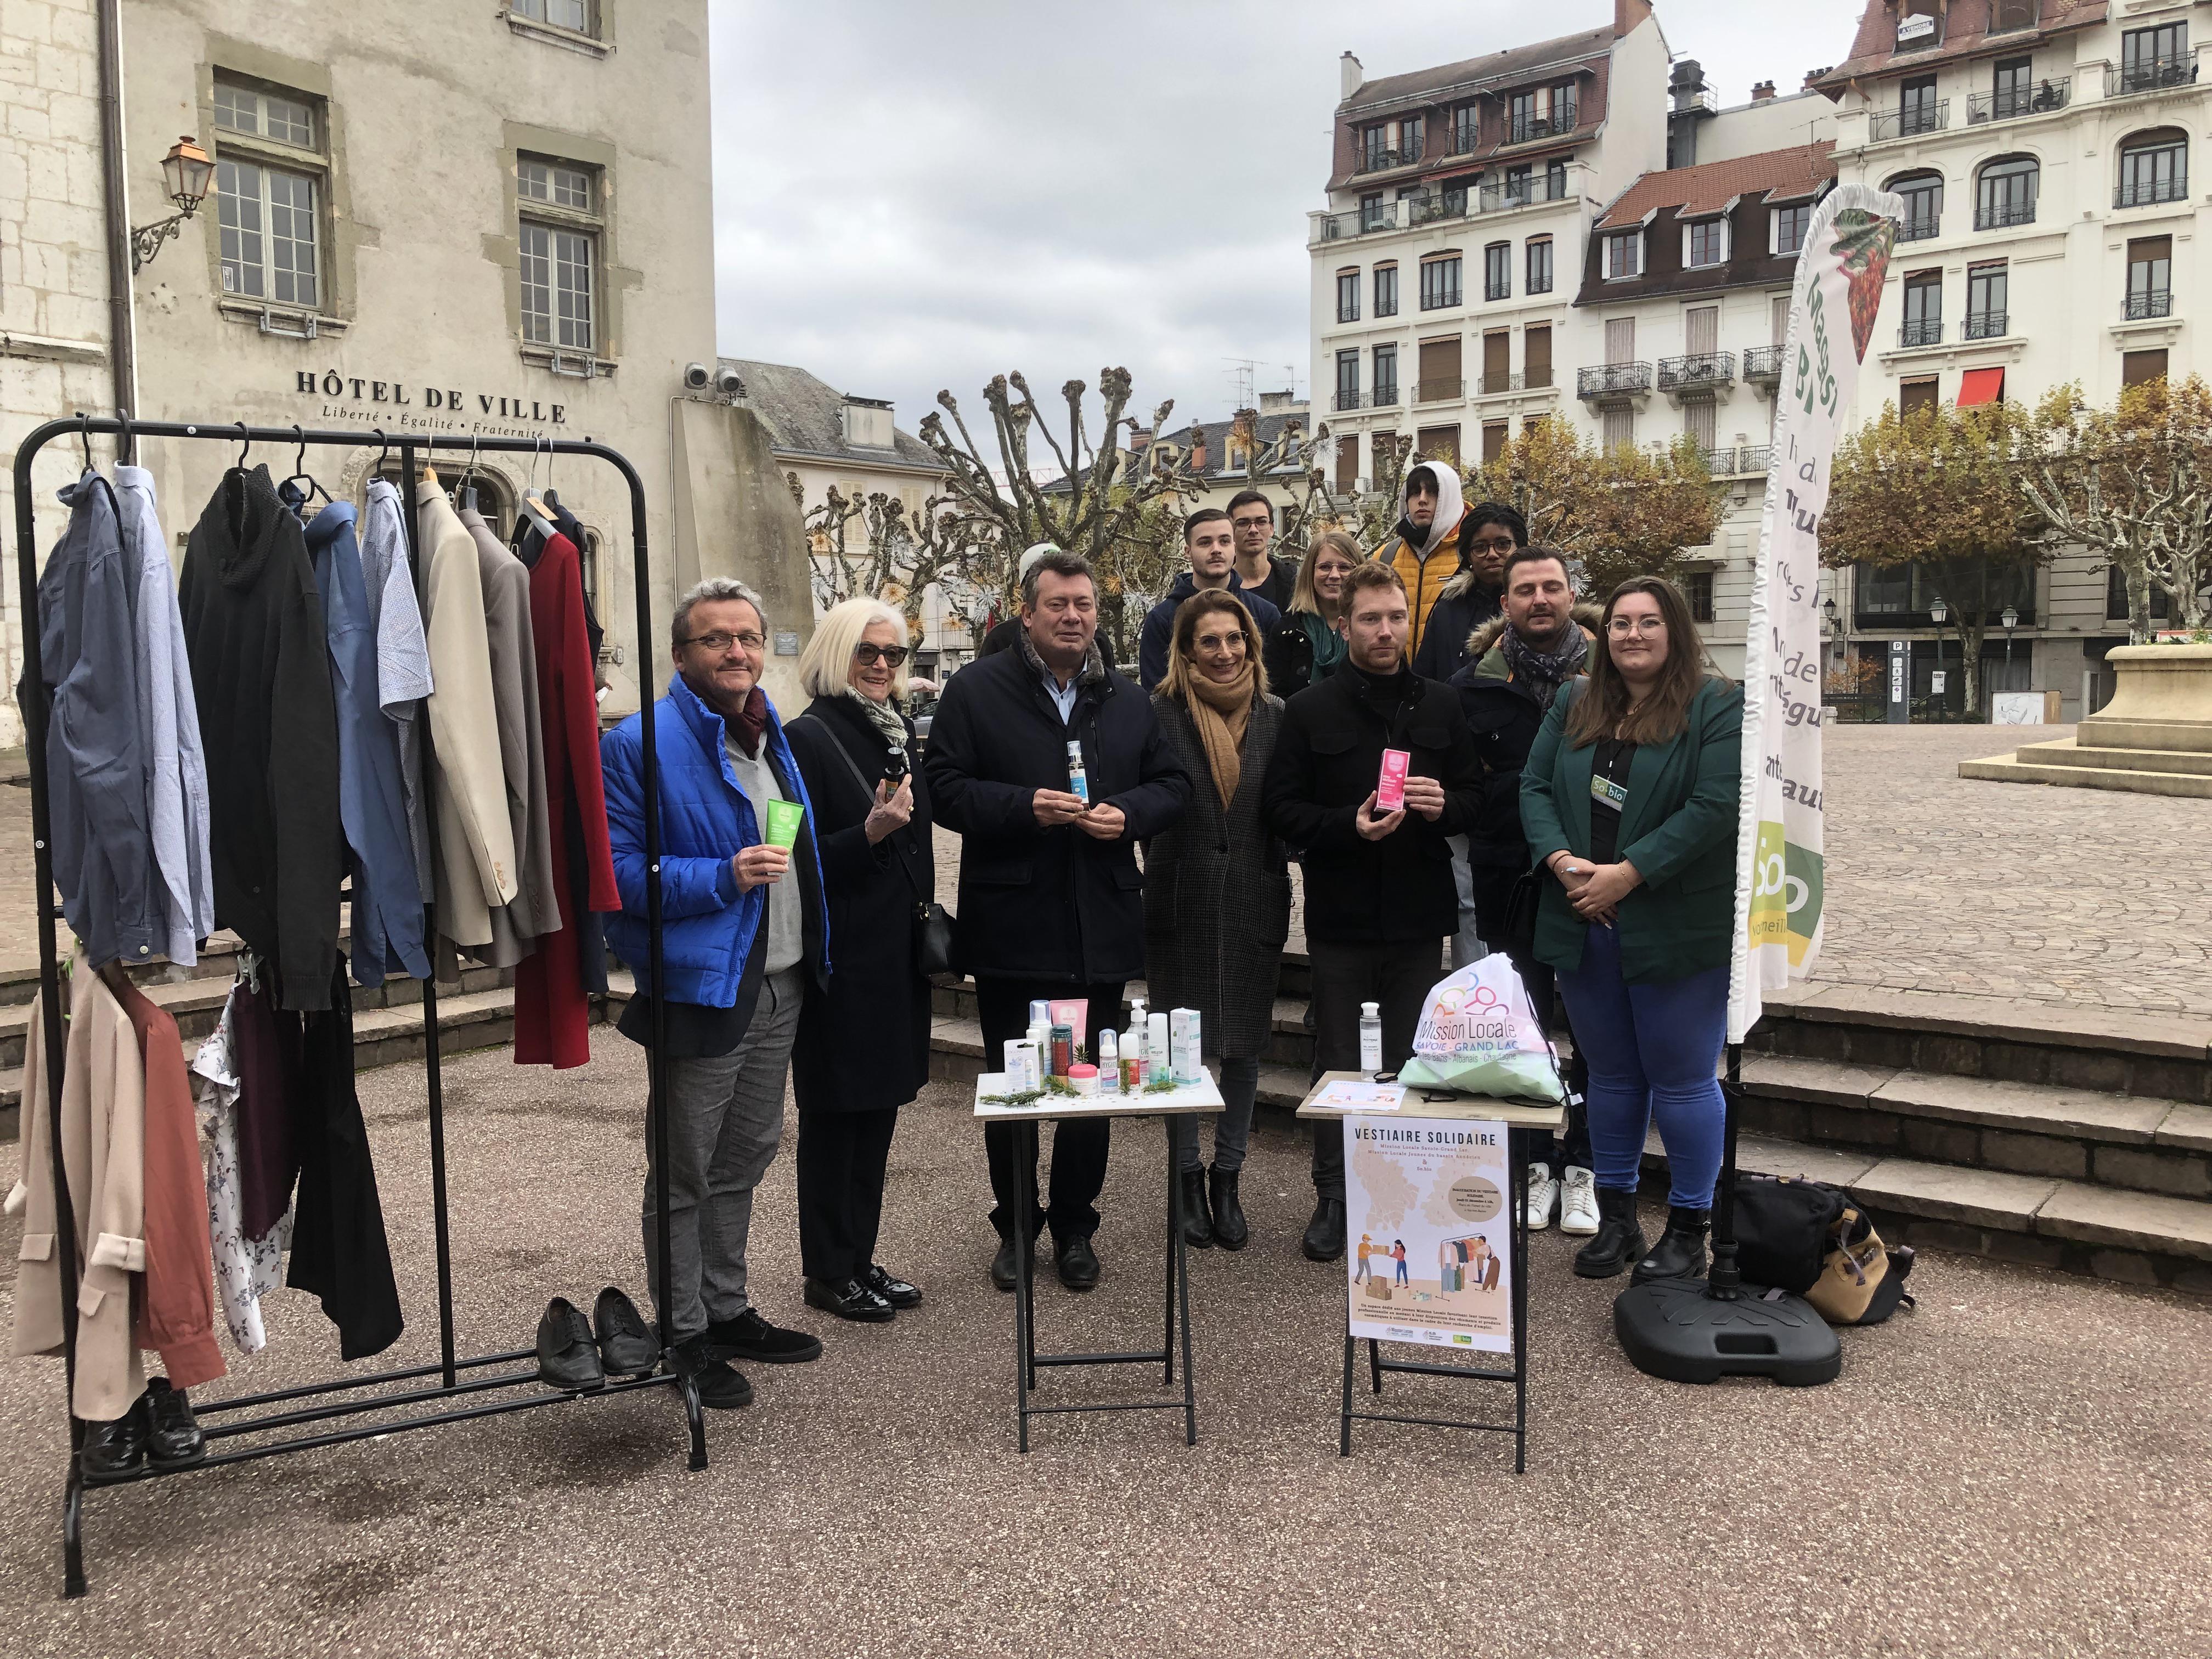 Les missions locales d’Aix-les-Bains et d’Annecy ont inauguré ce jeudi leur vestiaire solidaire destiné aux jeunes en recherche d’emploi.